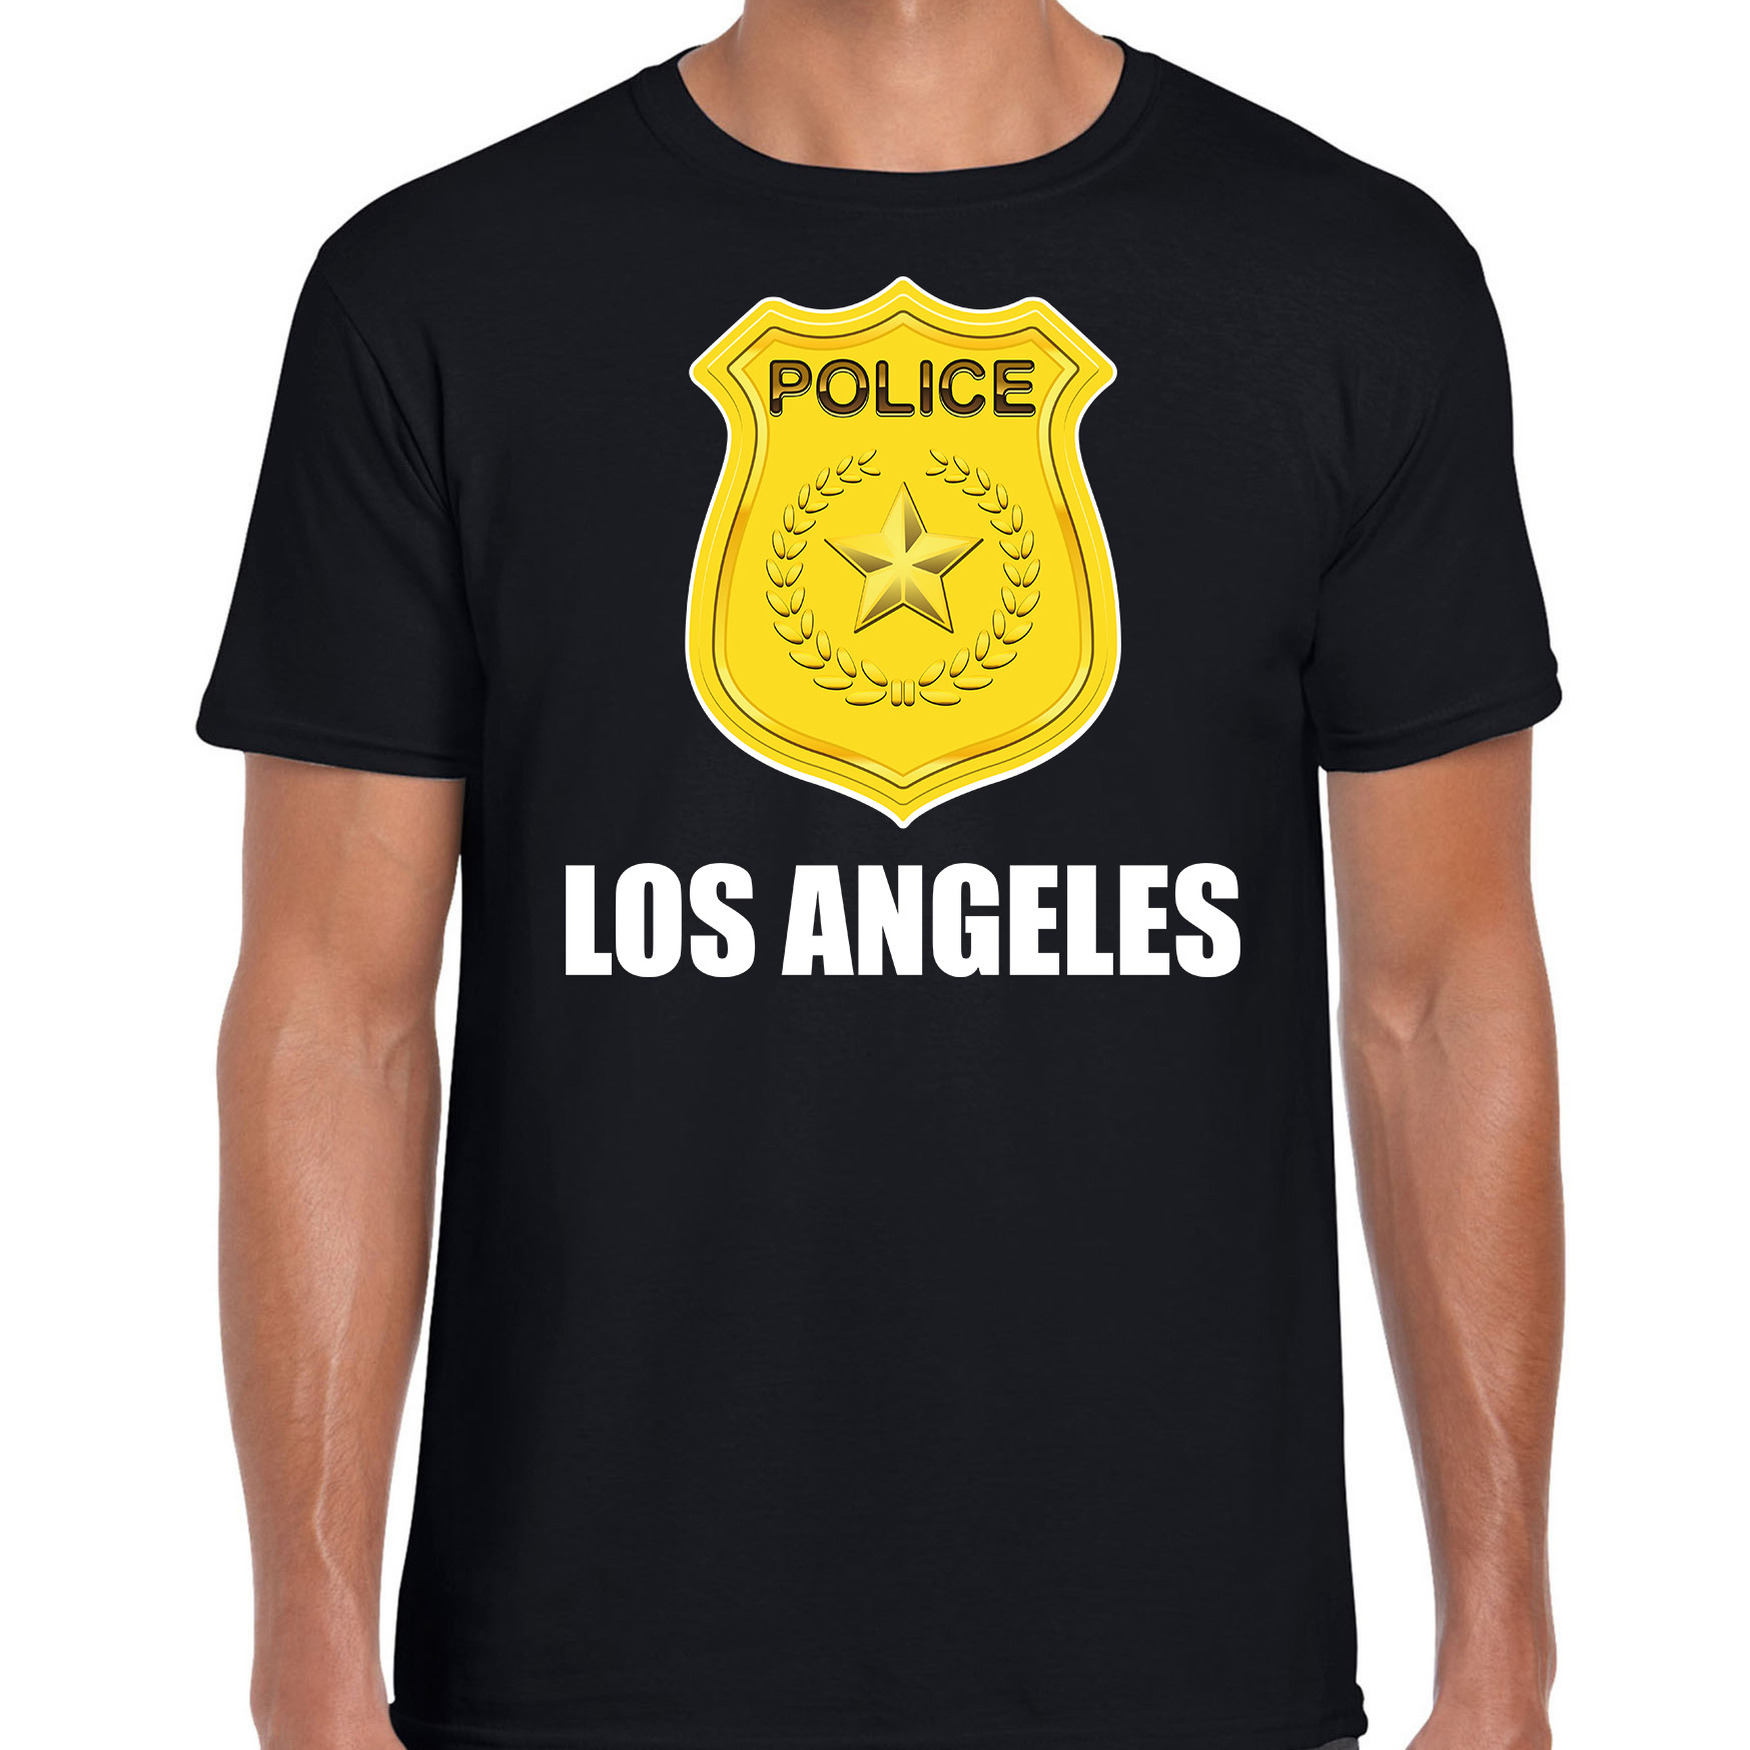 Police-politie embleem Los Angeles verkleed t-shirt zwart voor heren